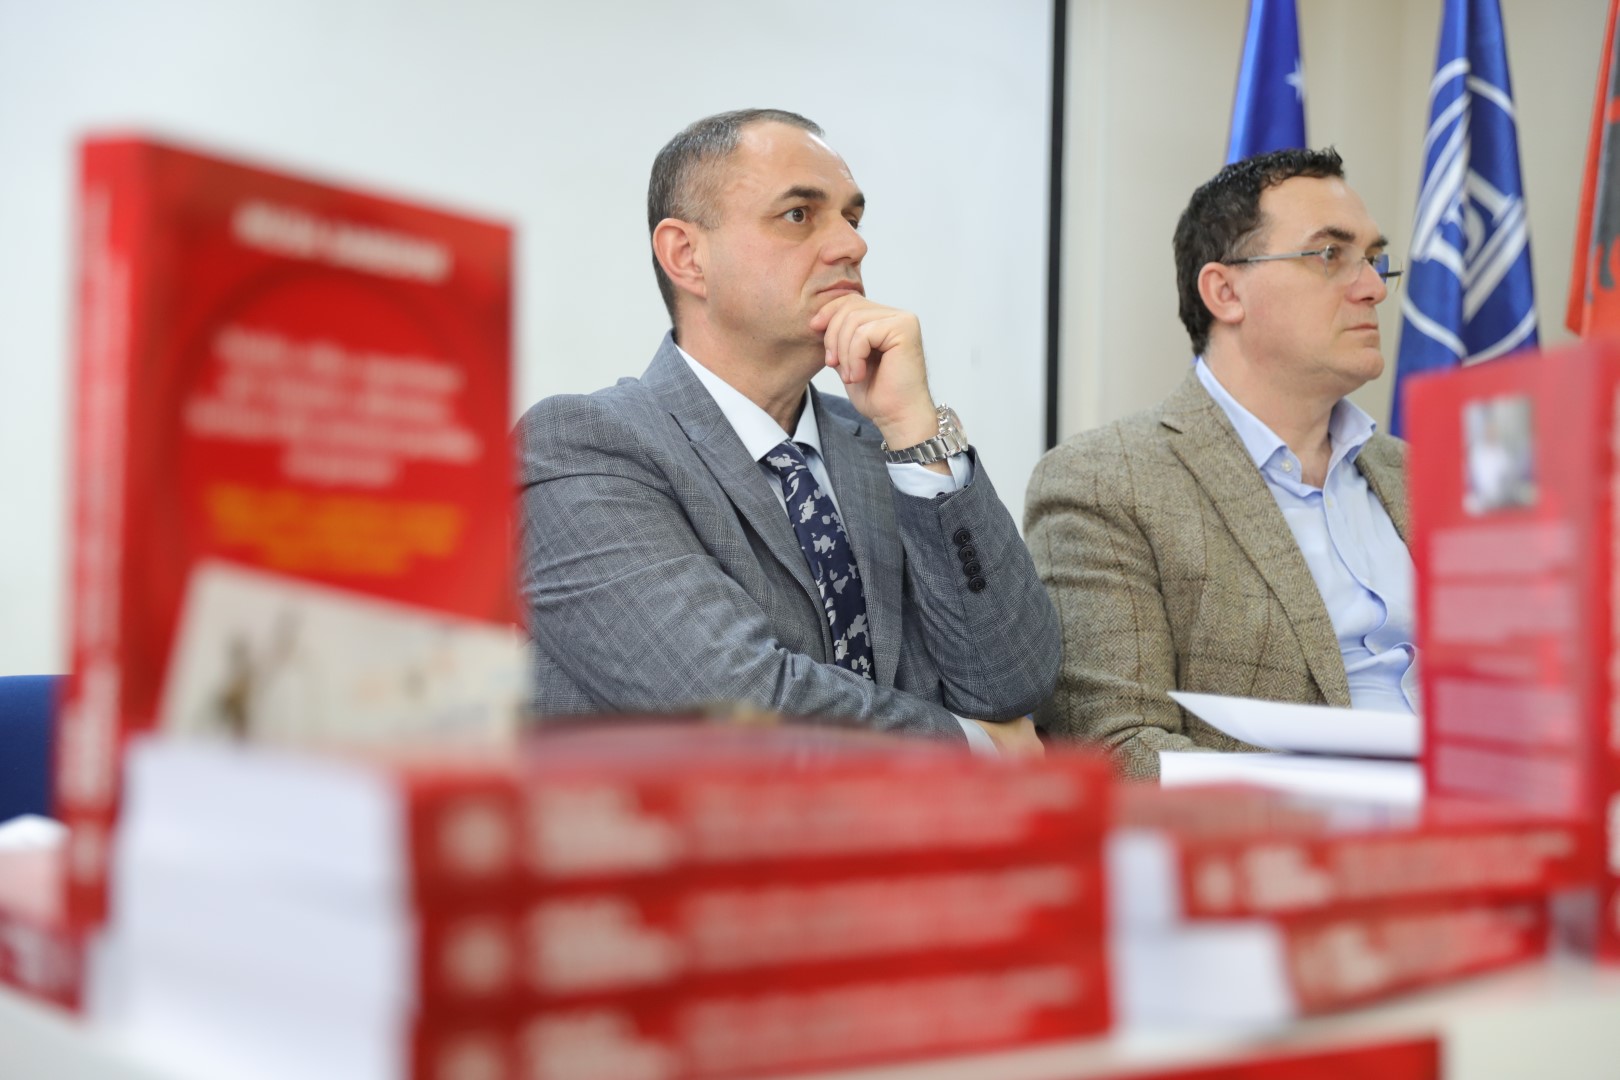 Në UBT promovohet libri i profesorit, gazetarit dhe publicistit, Musa Sabedini, vlerësohet si një libër me vlerë të madhe për fushën e gazetarisë